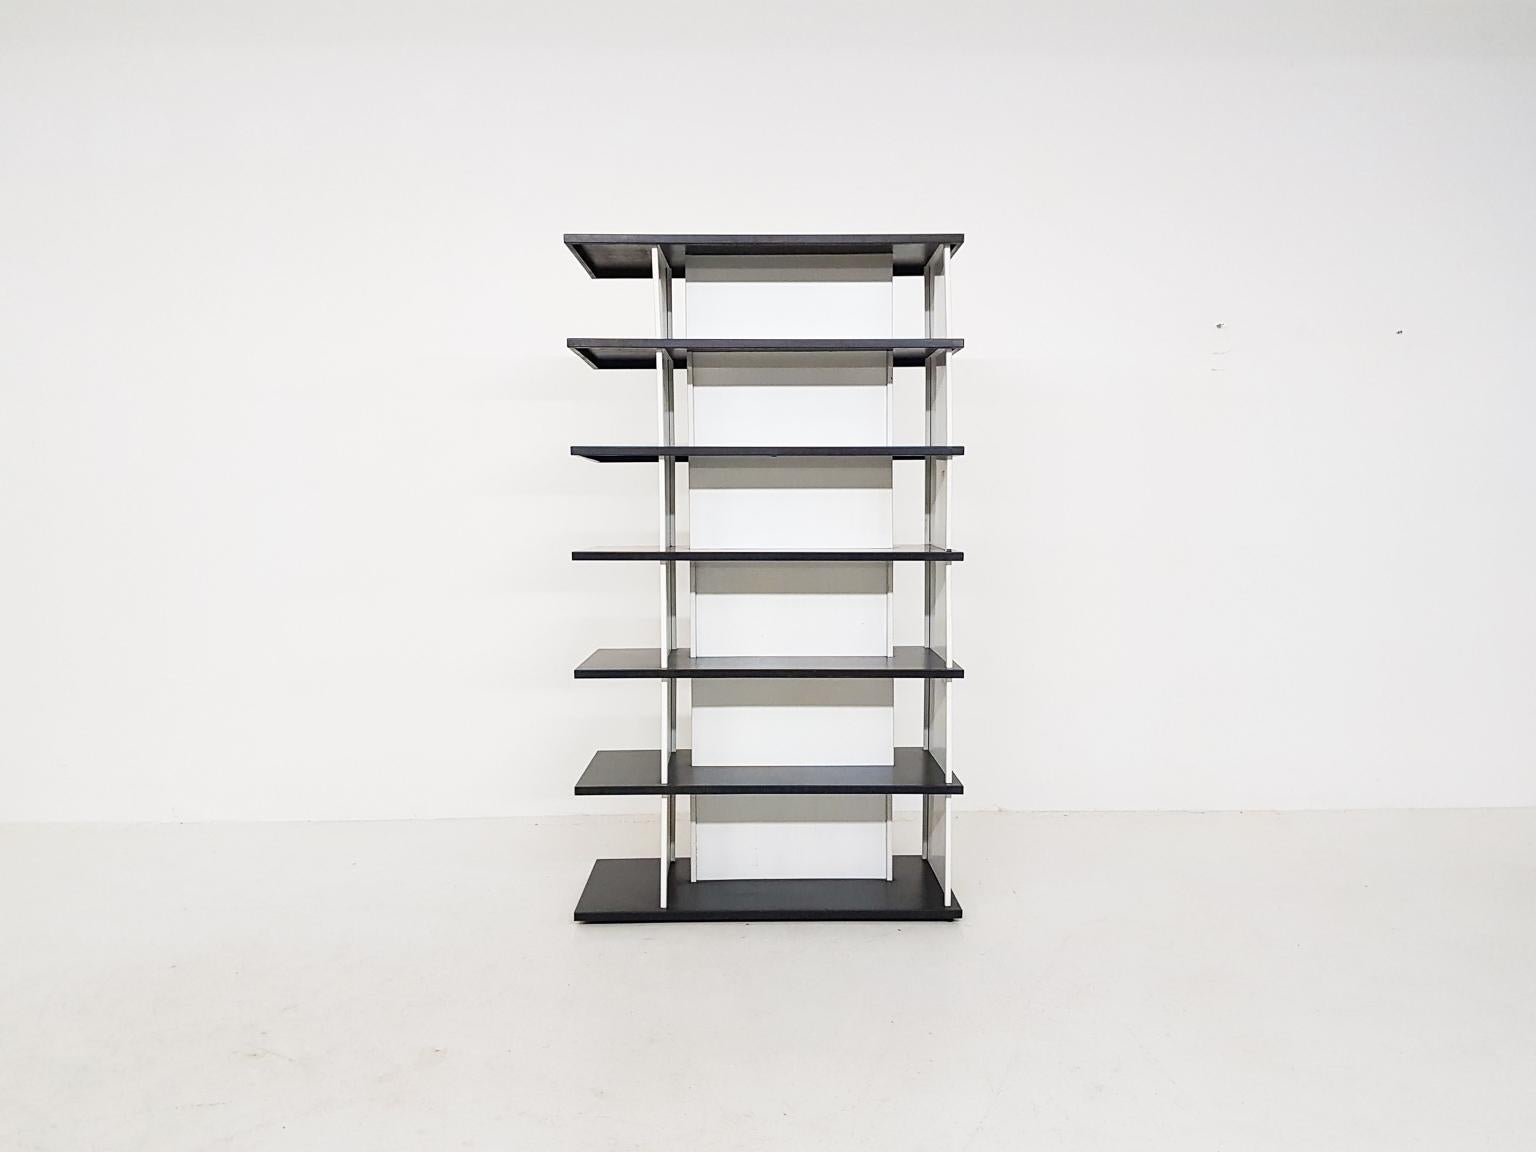 Séparation de pièce ou bibliothèque minimaliste hollandaise en métal par Wim Rietveld, le fils de Gerrtit Rietveld. Il a été conçu pour 